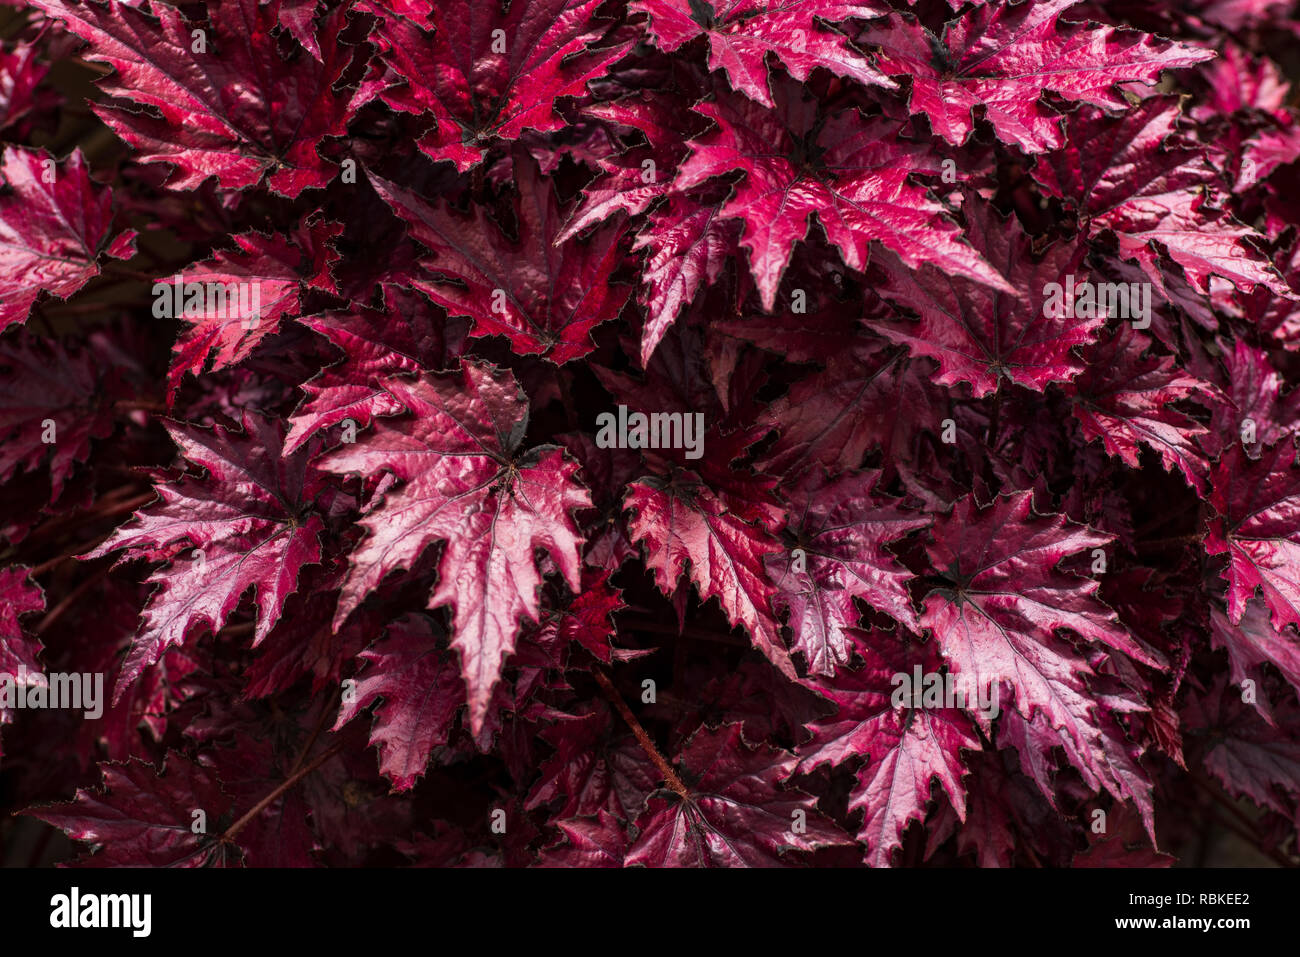 Die Blume von Begonia, die Lila Blätter von Begonia, die scharfe Blatt.  Blumen von Begonia close-up Stockfotografie - Alamy